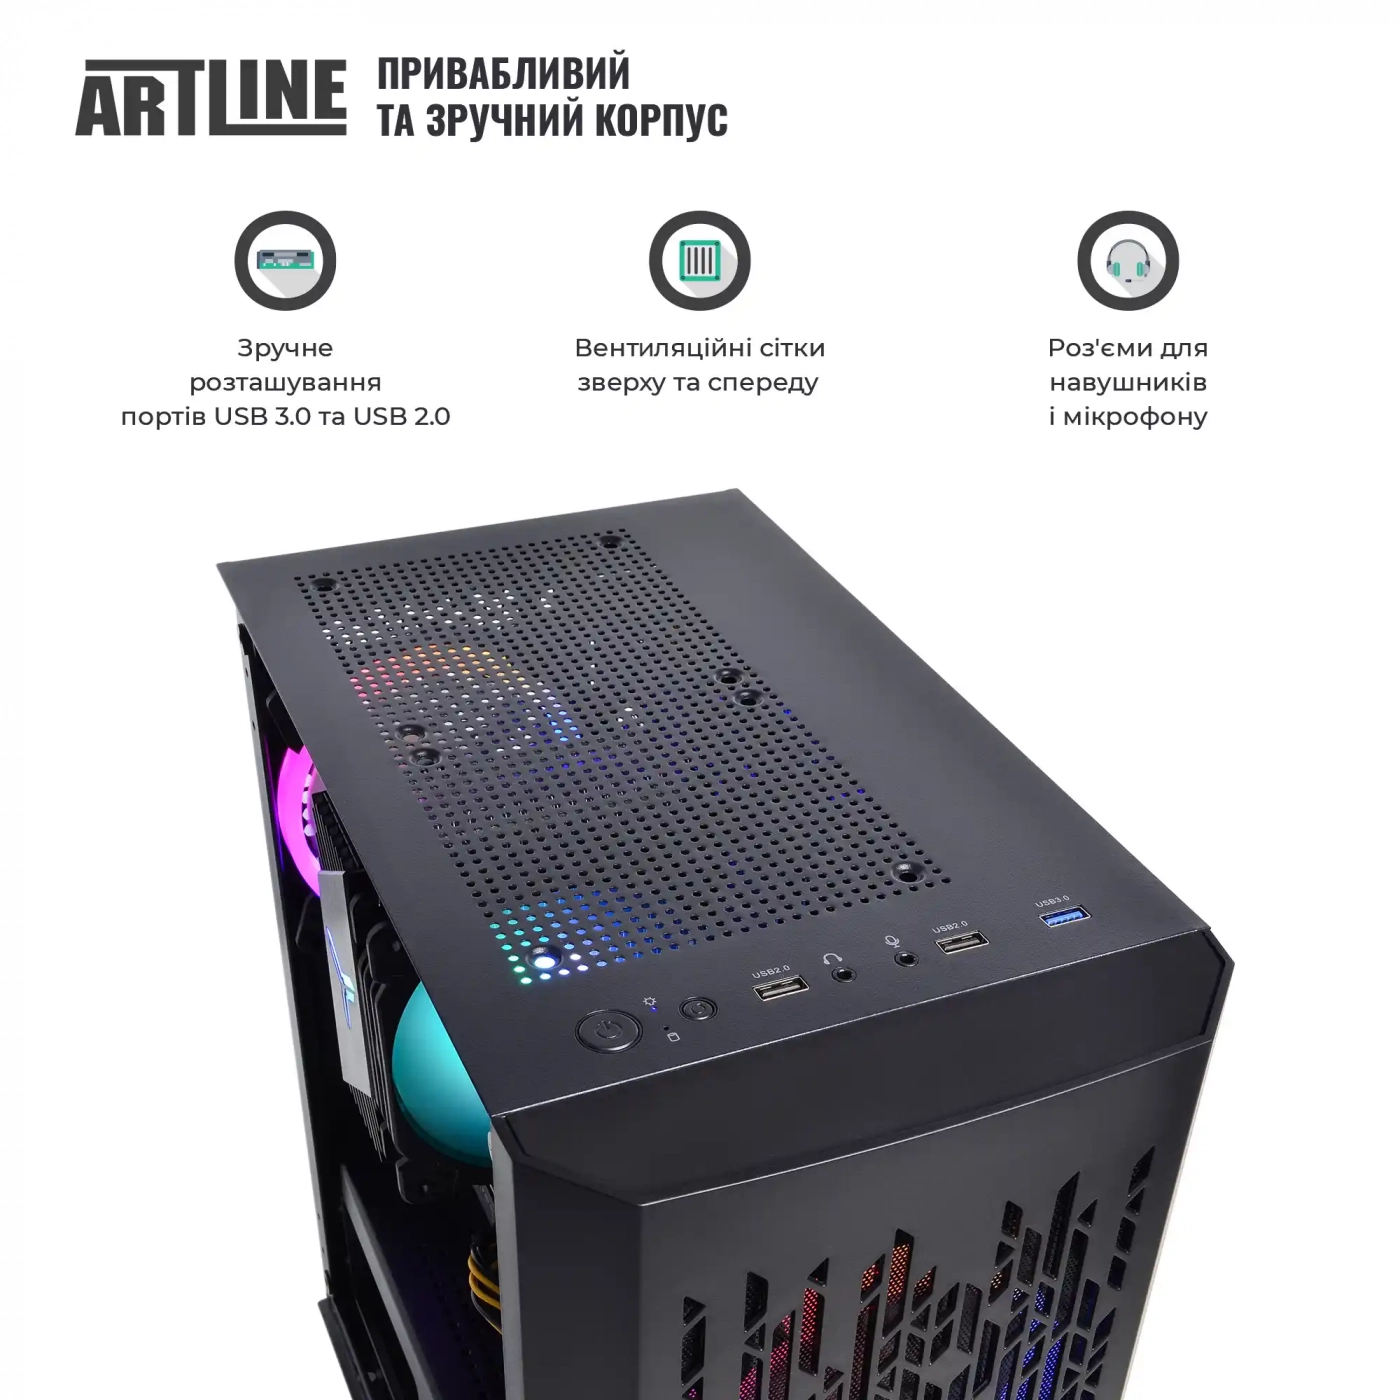 Купить Компьютер ARTLINE Gaming X39v70 - фото 4